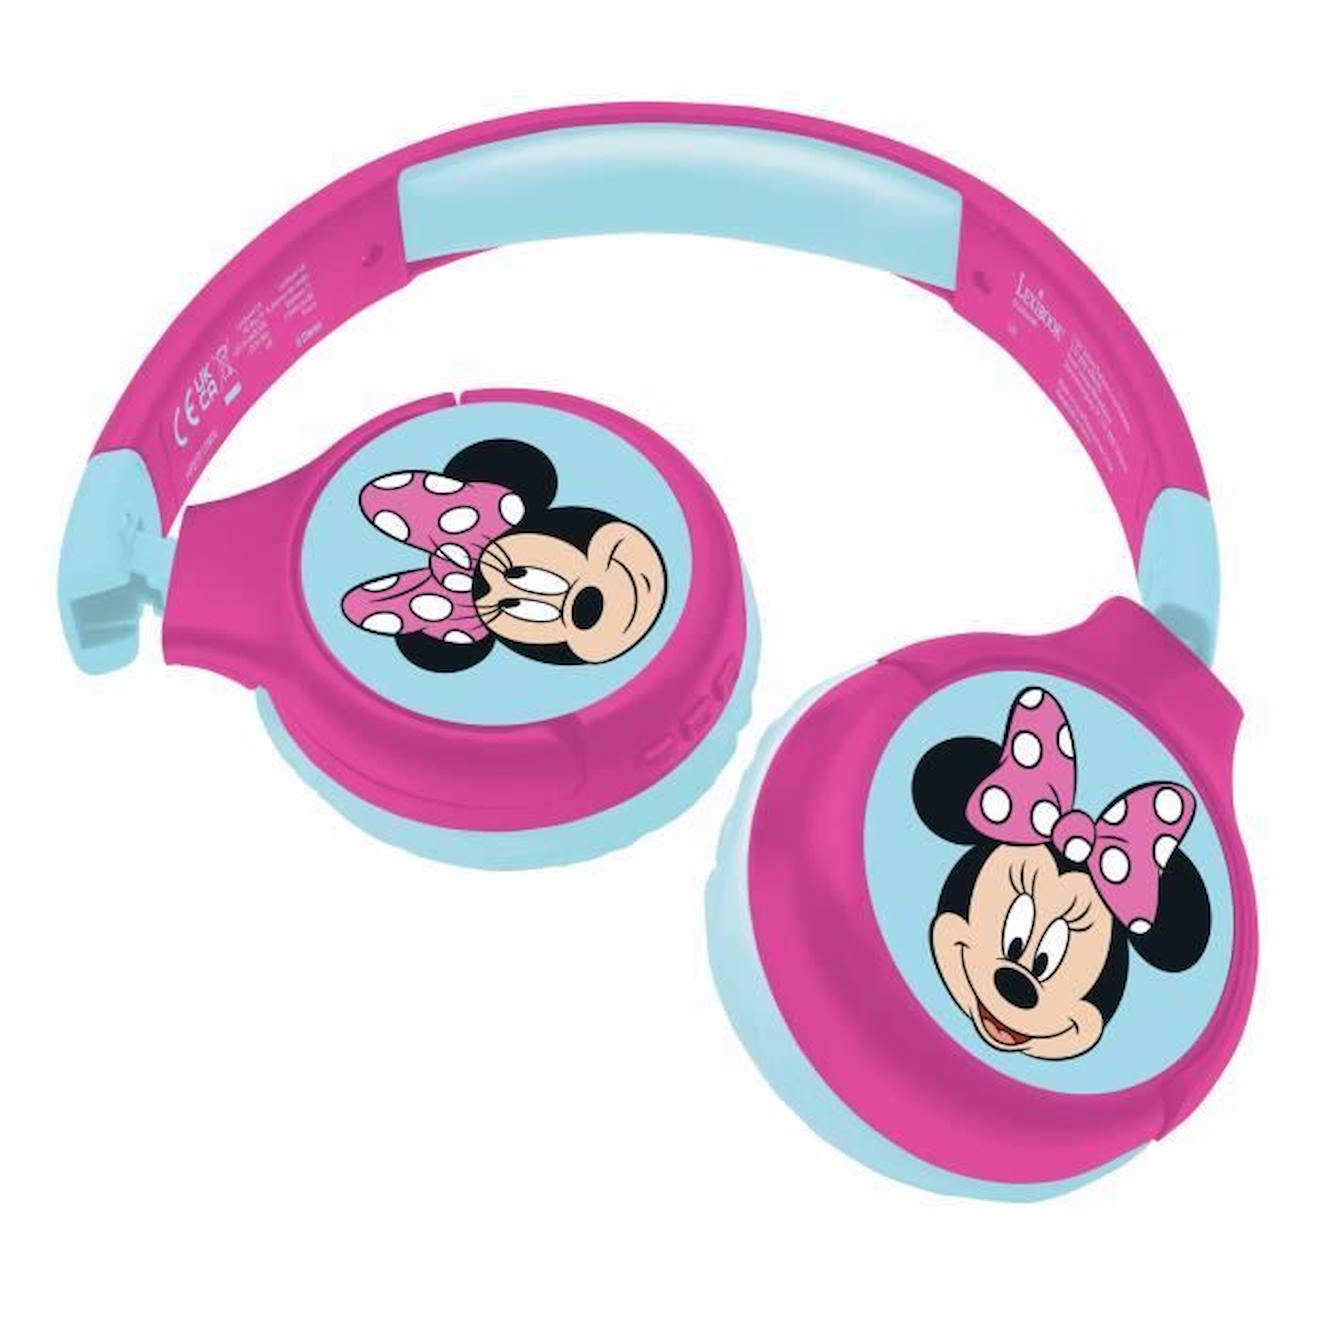 Casque audio Bluetooth et filaire pour enfants avec limitation de son -  Minnie rose - Lexibook